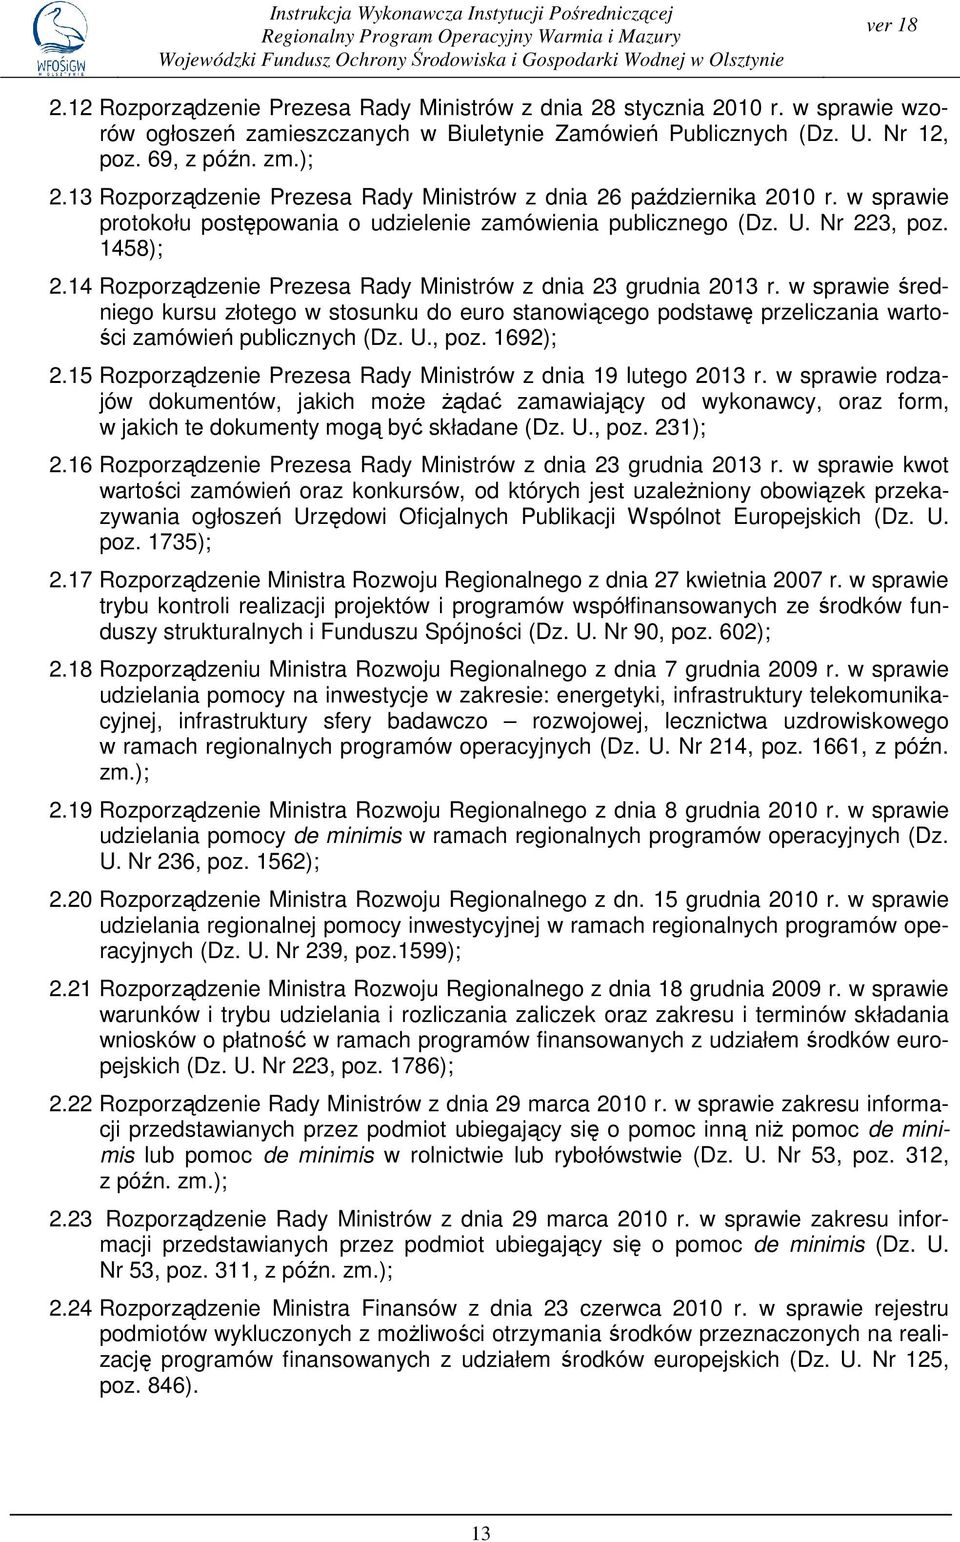 13 Rozporządzenie Prezesa Rady Ministrów z dnia 26 października 2010 r. w sprawie protokołu postępowania o udzielenie zamówienia publicznego (Dz. U. Nr 223, poz. 1458); 2.